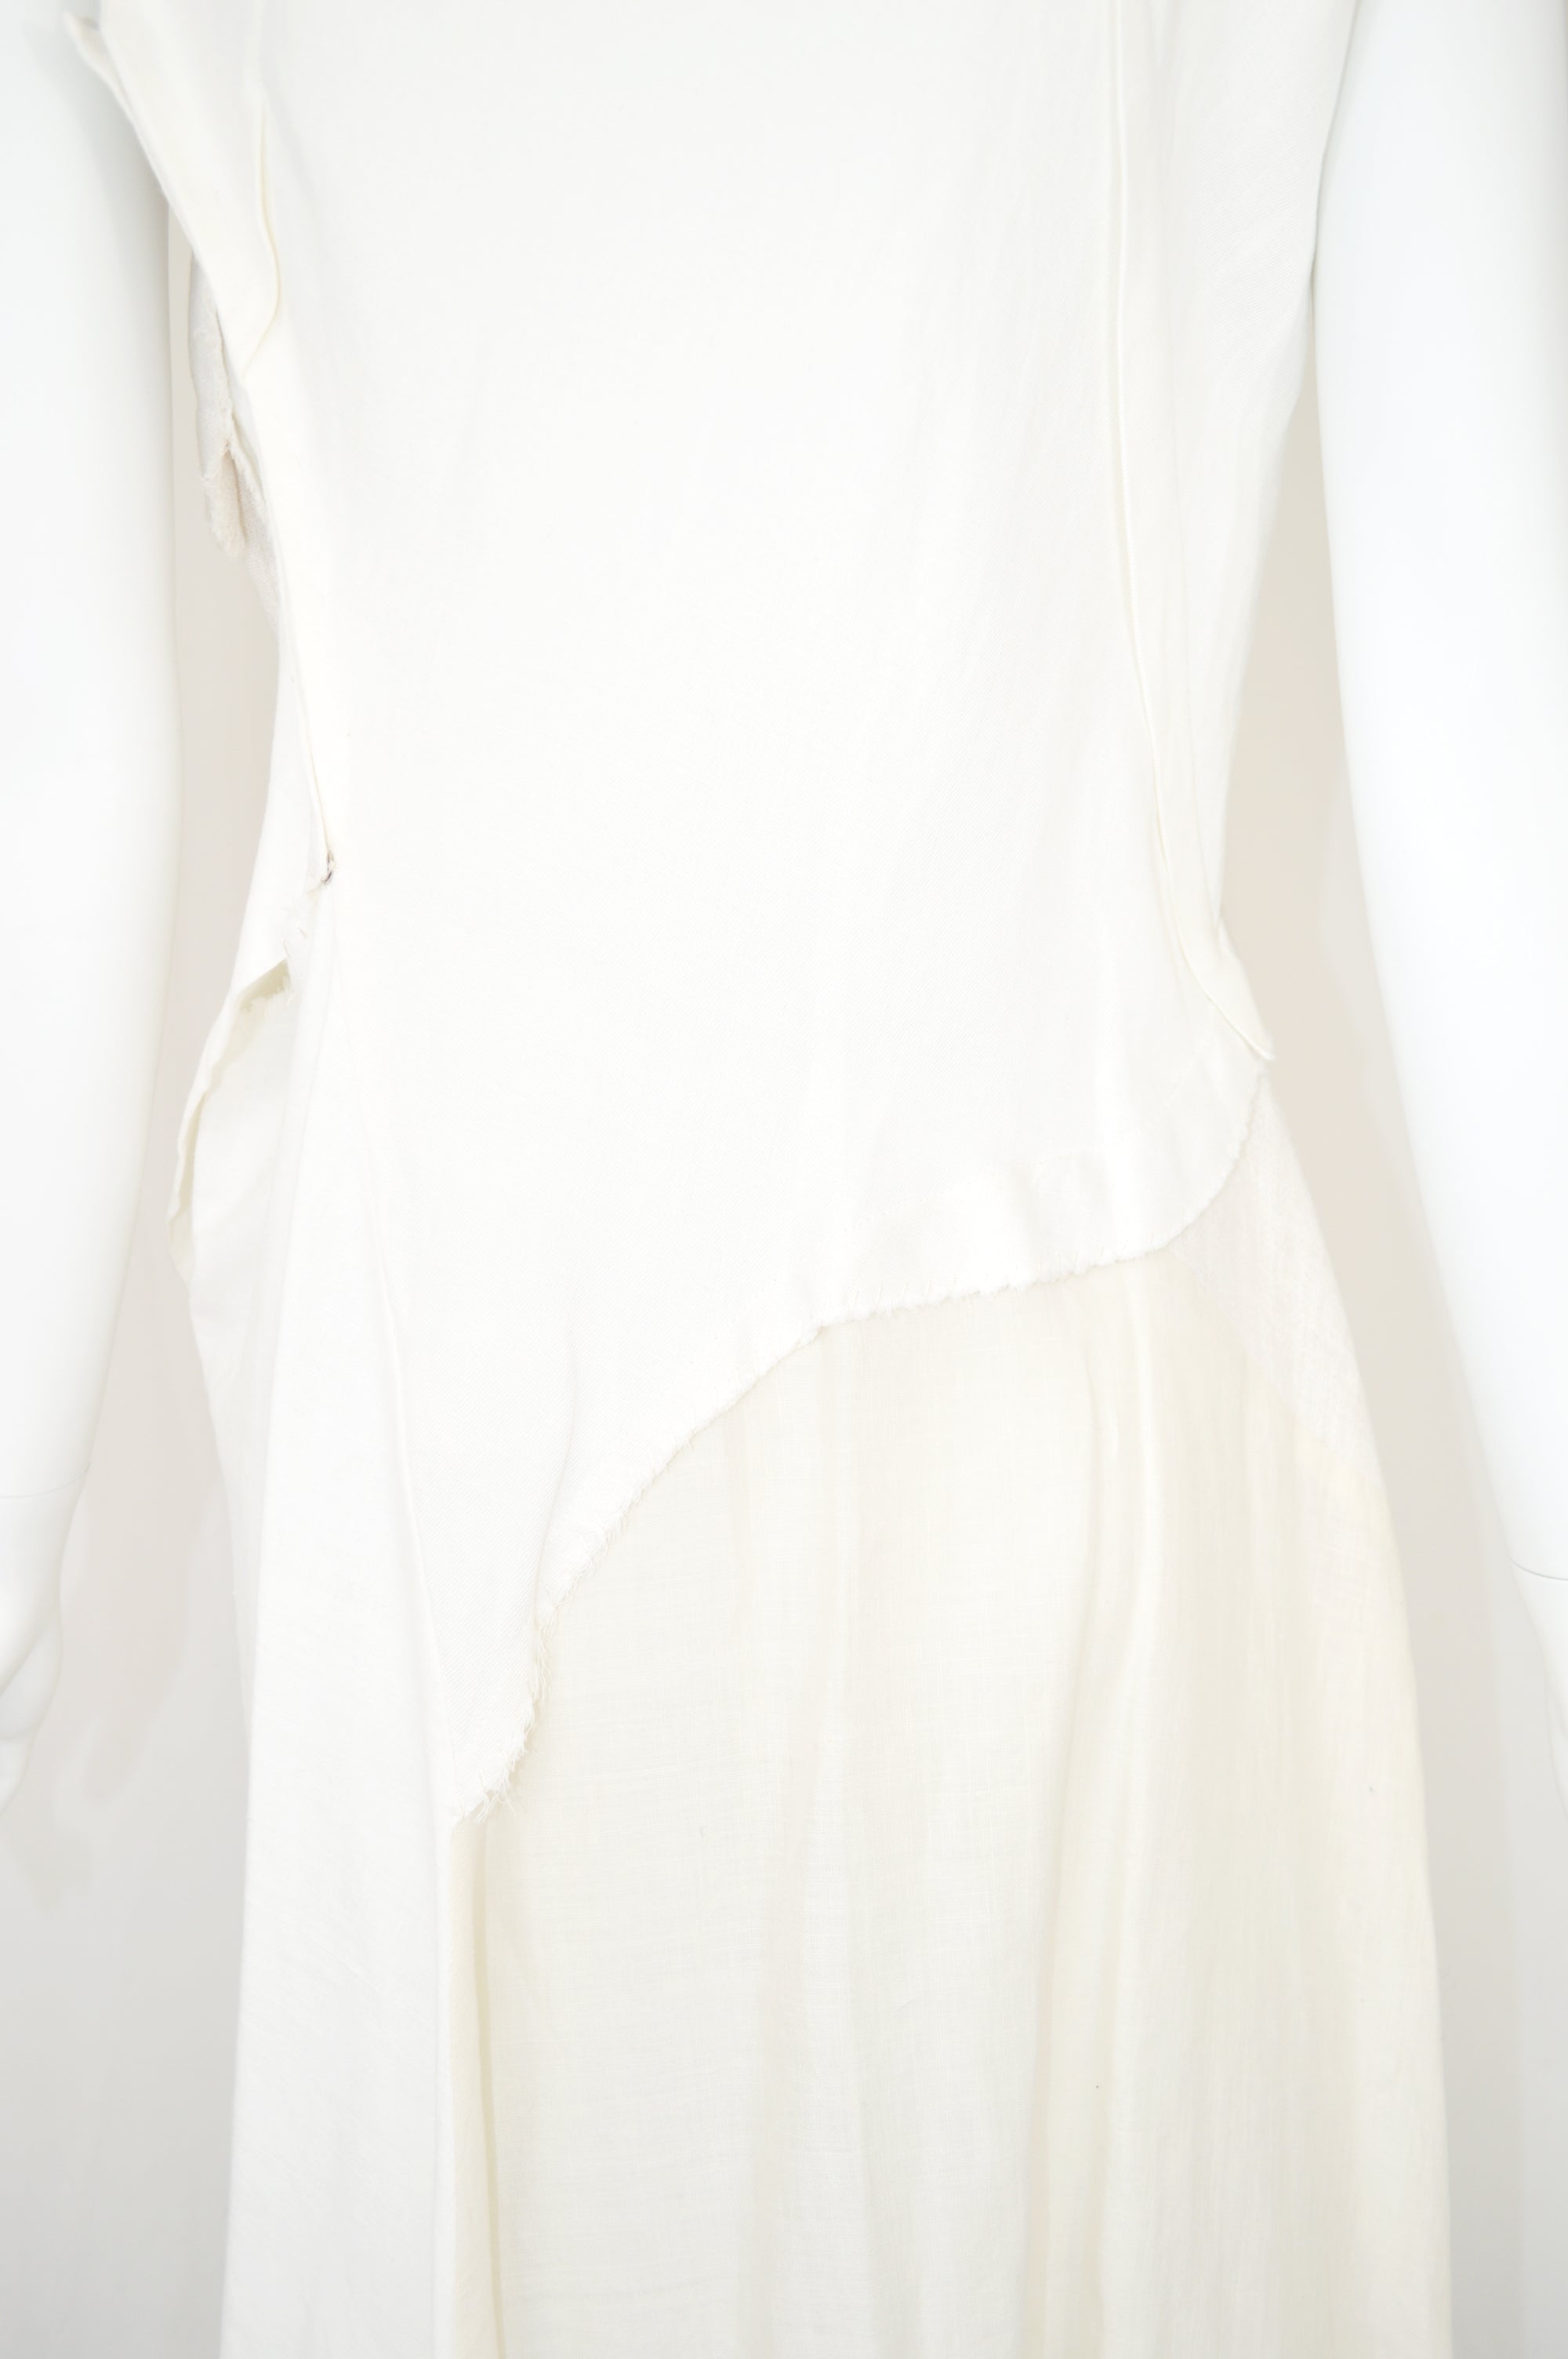 YOHJI YAMAMOTO SS 2009 Linen Patchwork Dress